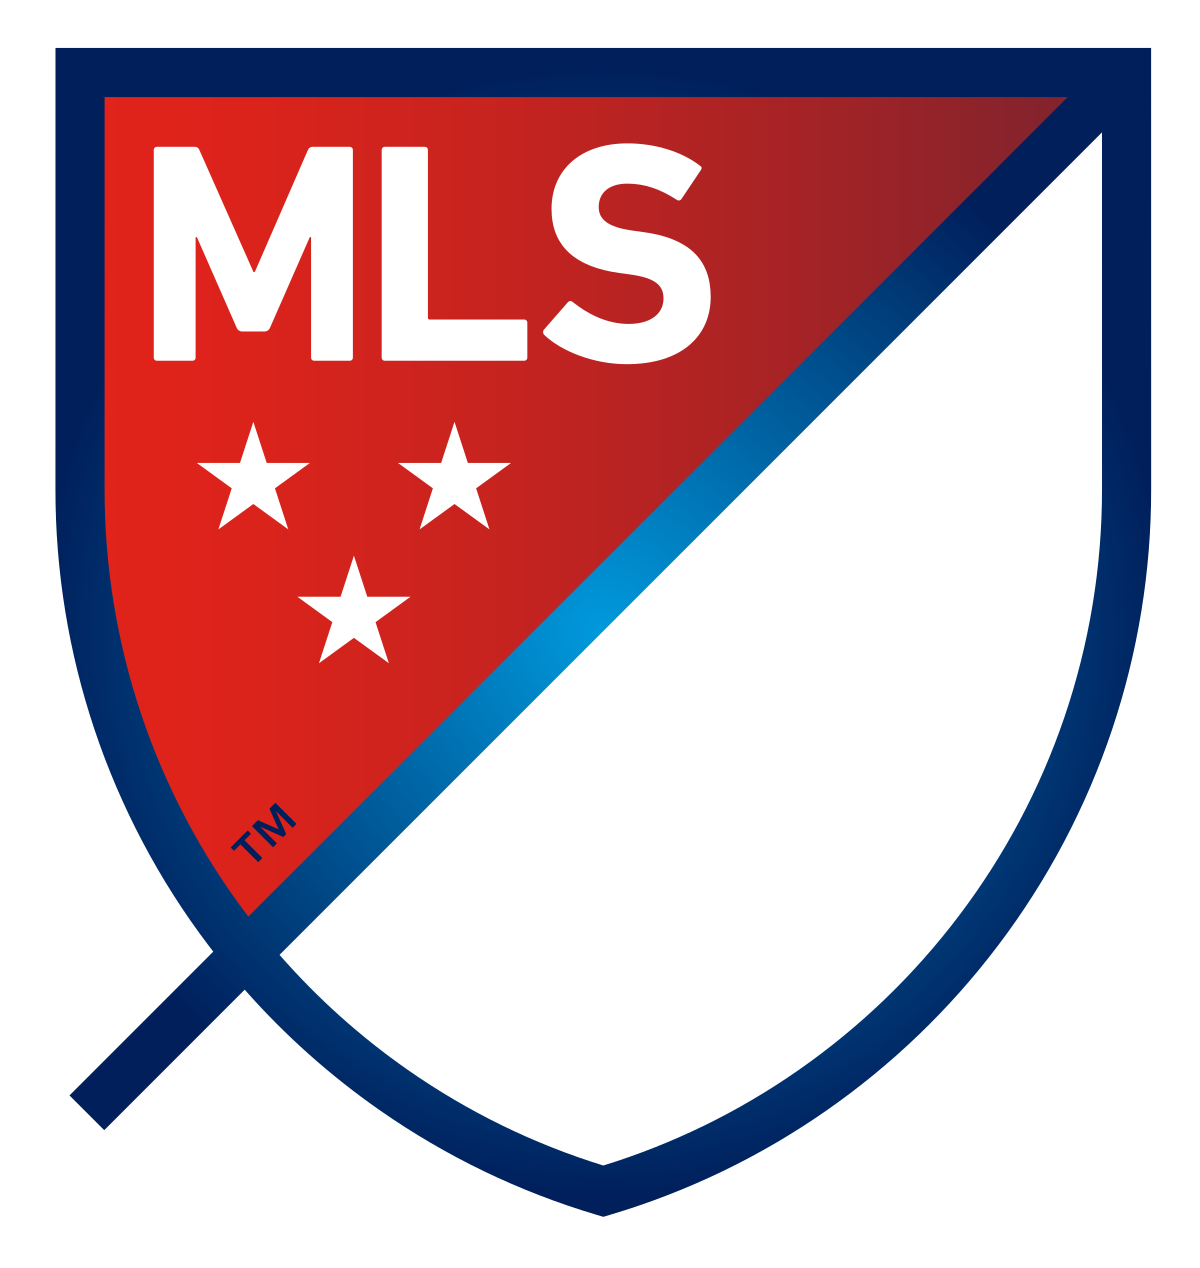 MLS emblem